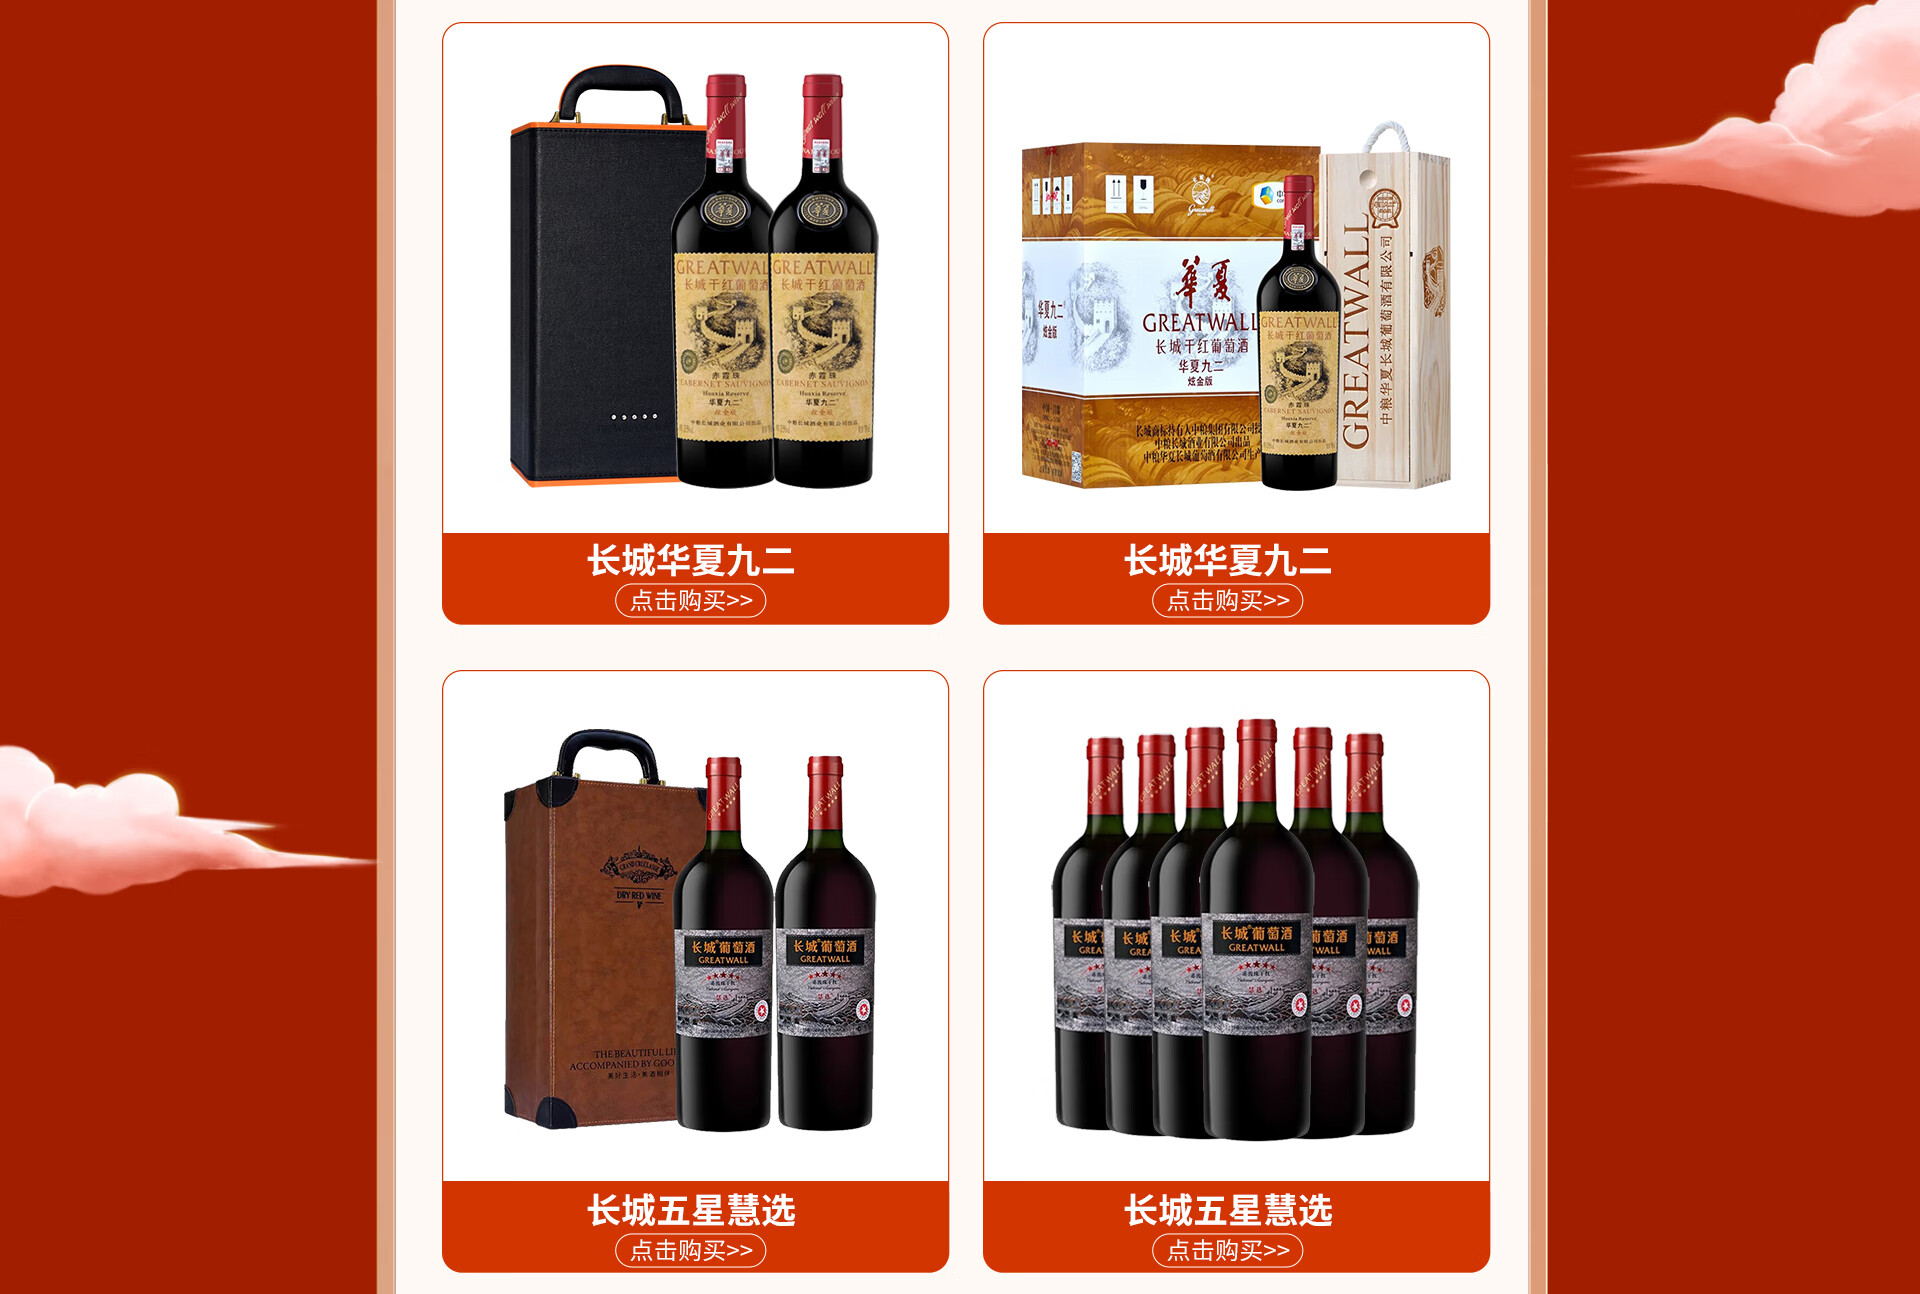 葡萄酒品牌雷沃堡成为第二届中国大众网球联赛官方供应商_百科TA说